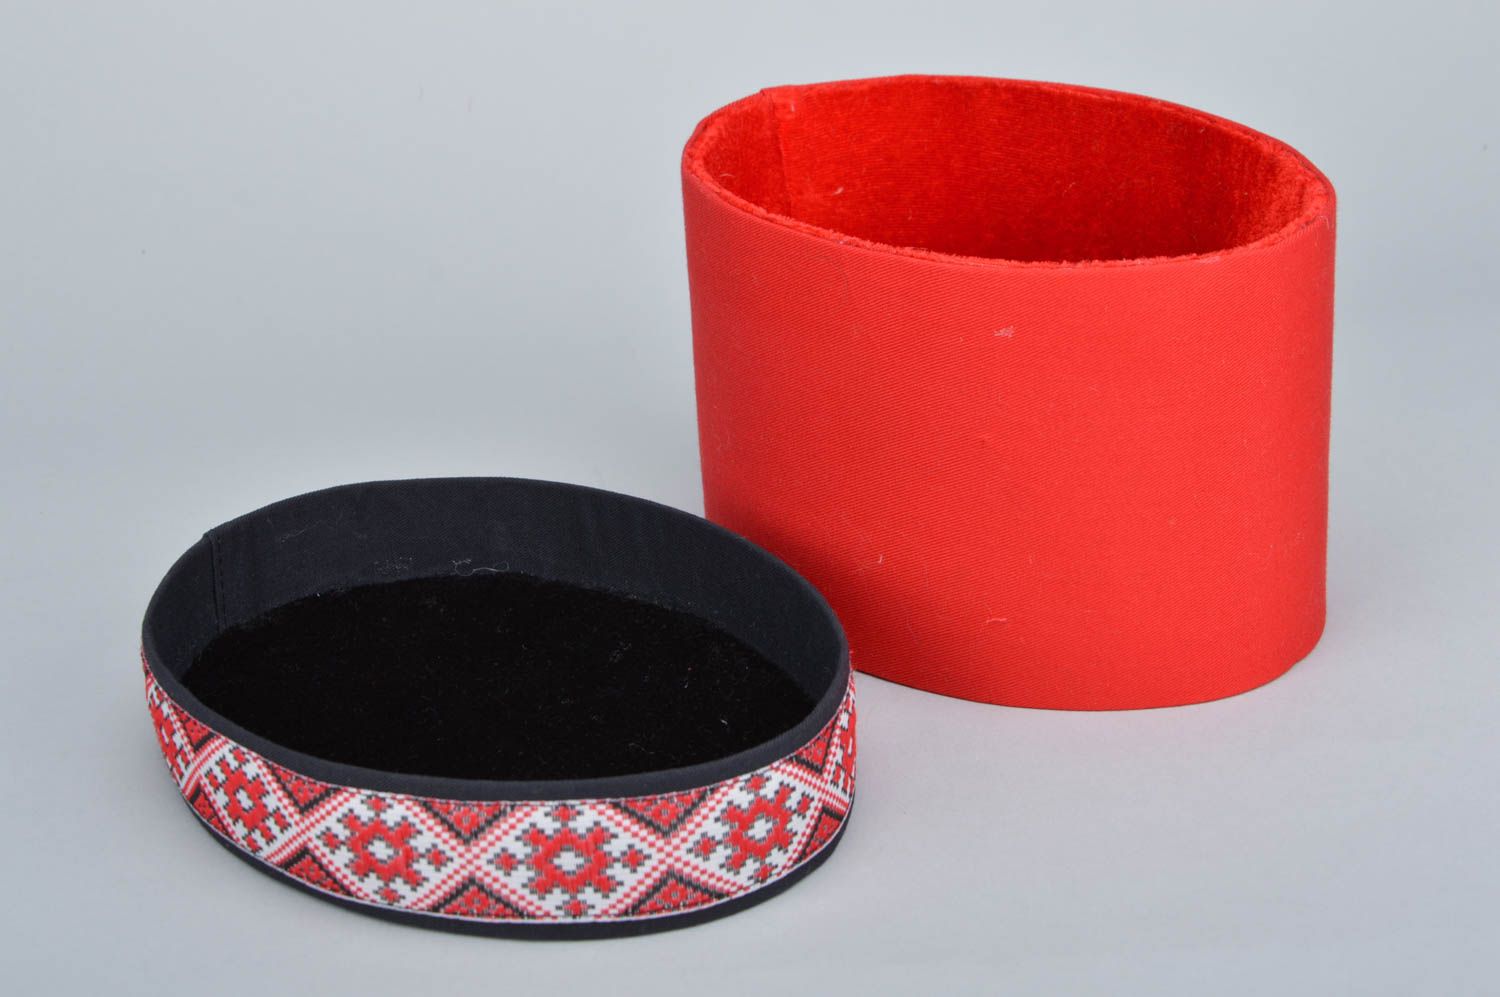 Caixinha revestida com tecido vermelha com padrões étnicos em forma oval  foto 4